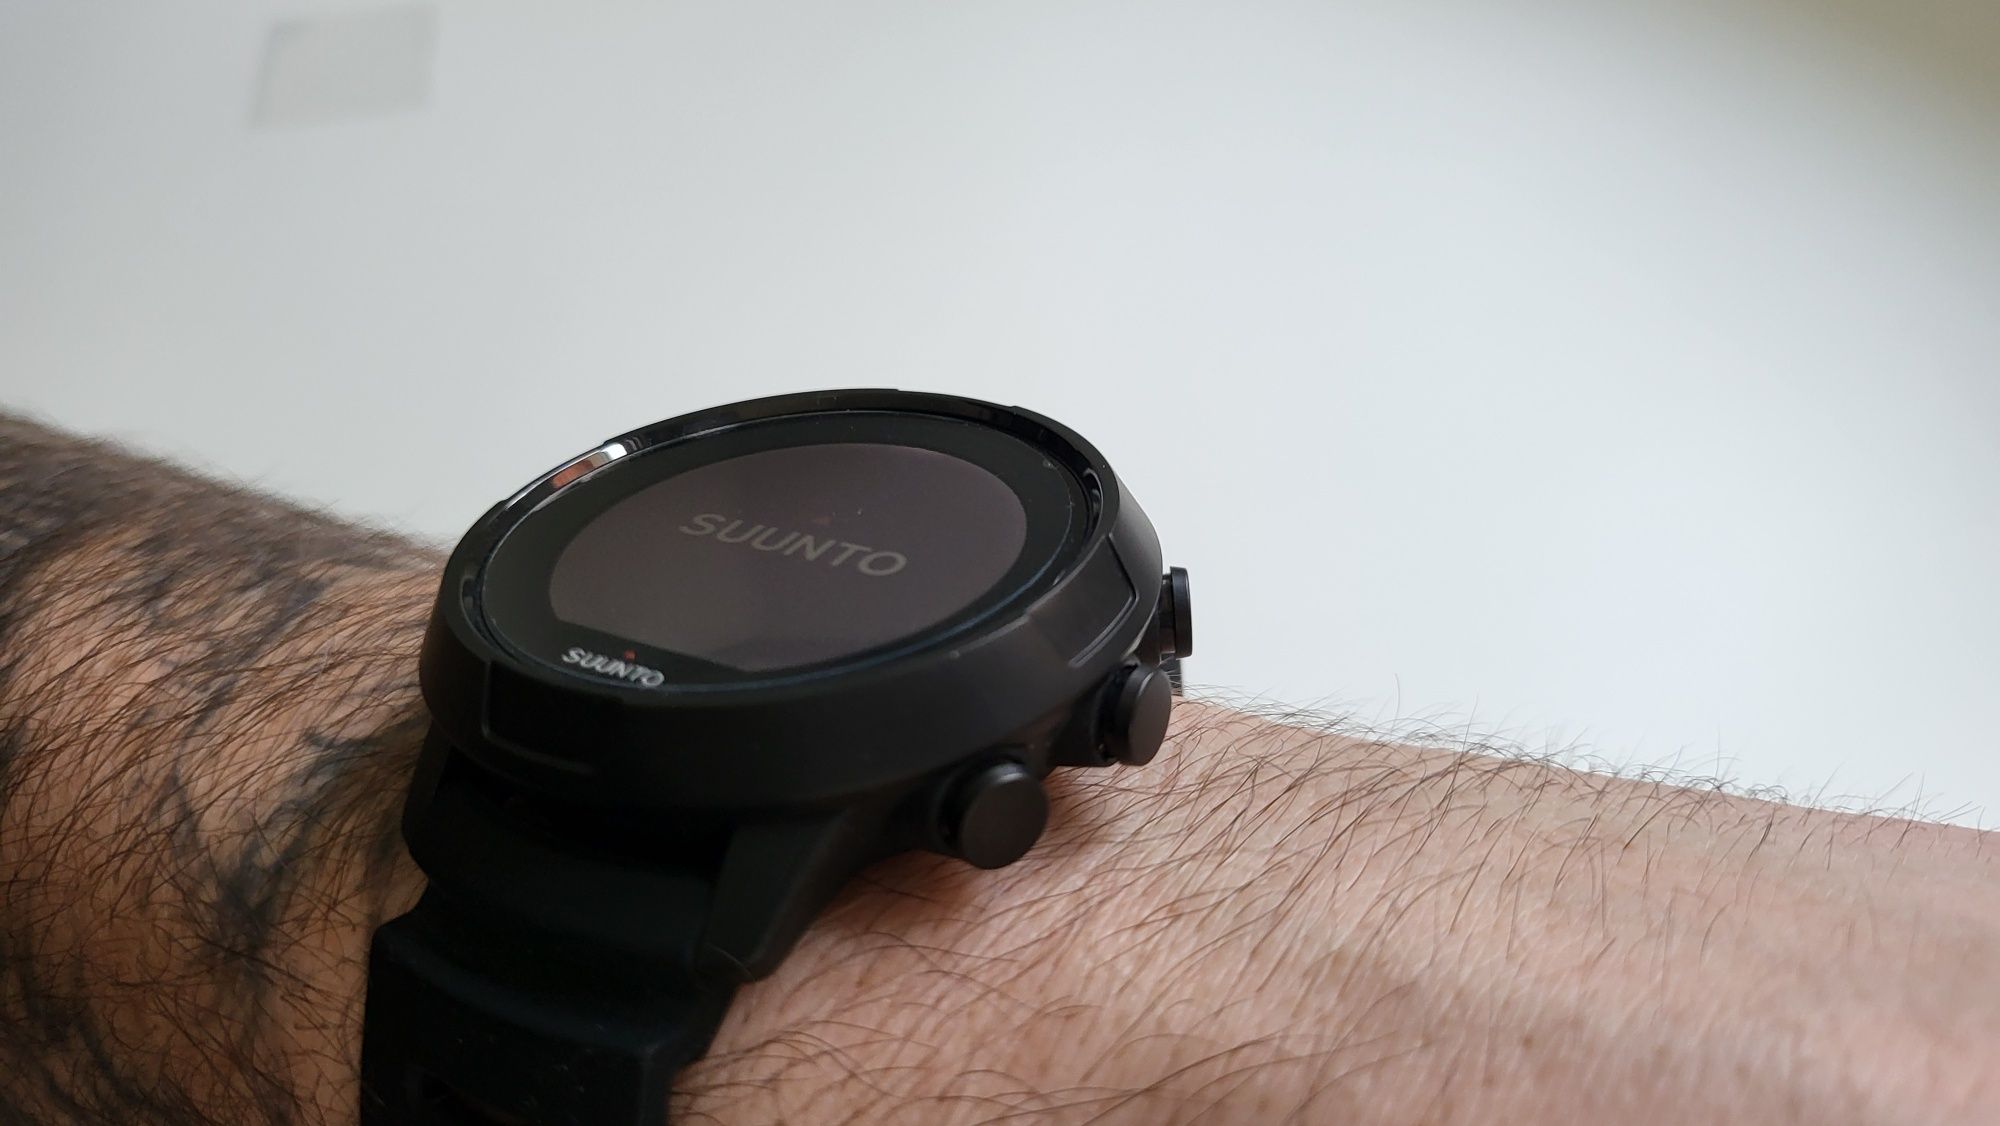 Комп'ютер для дайвінгу, наручний годинник Suunto D5 як новий